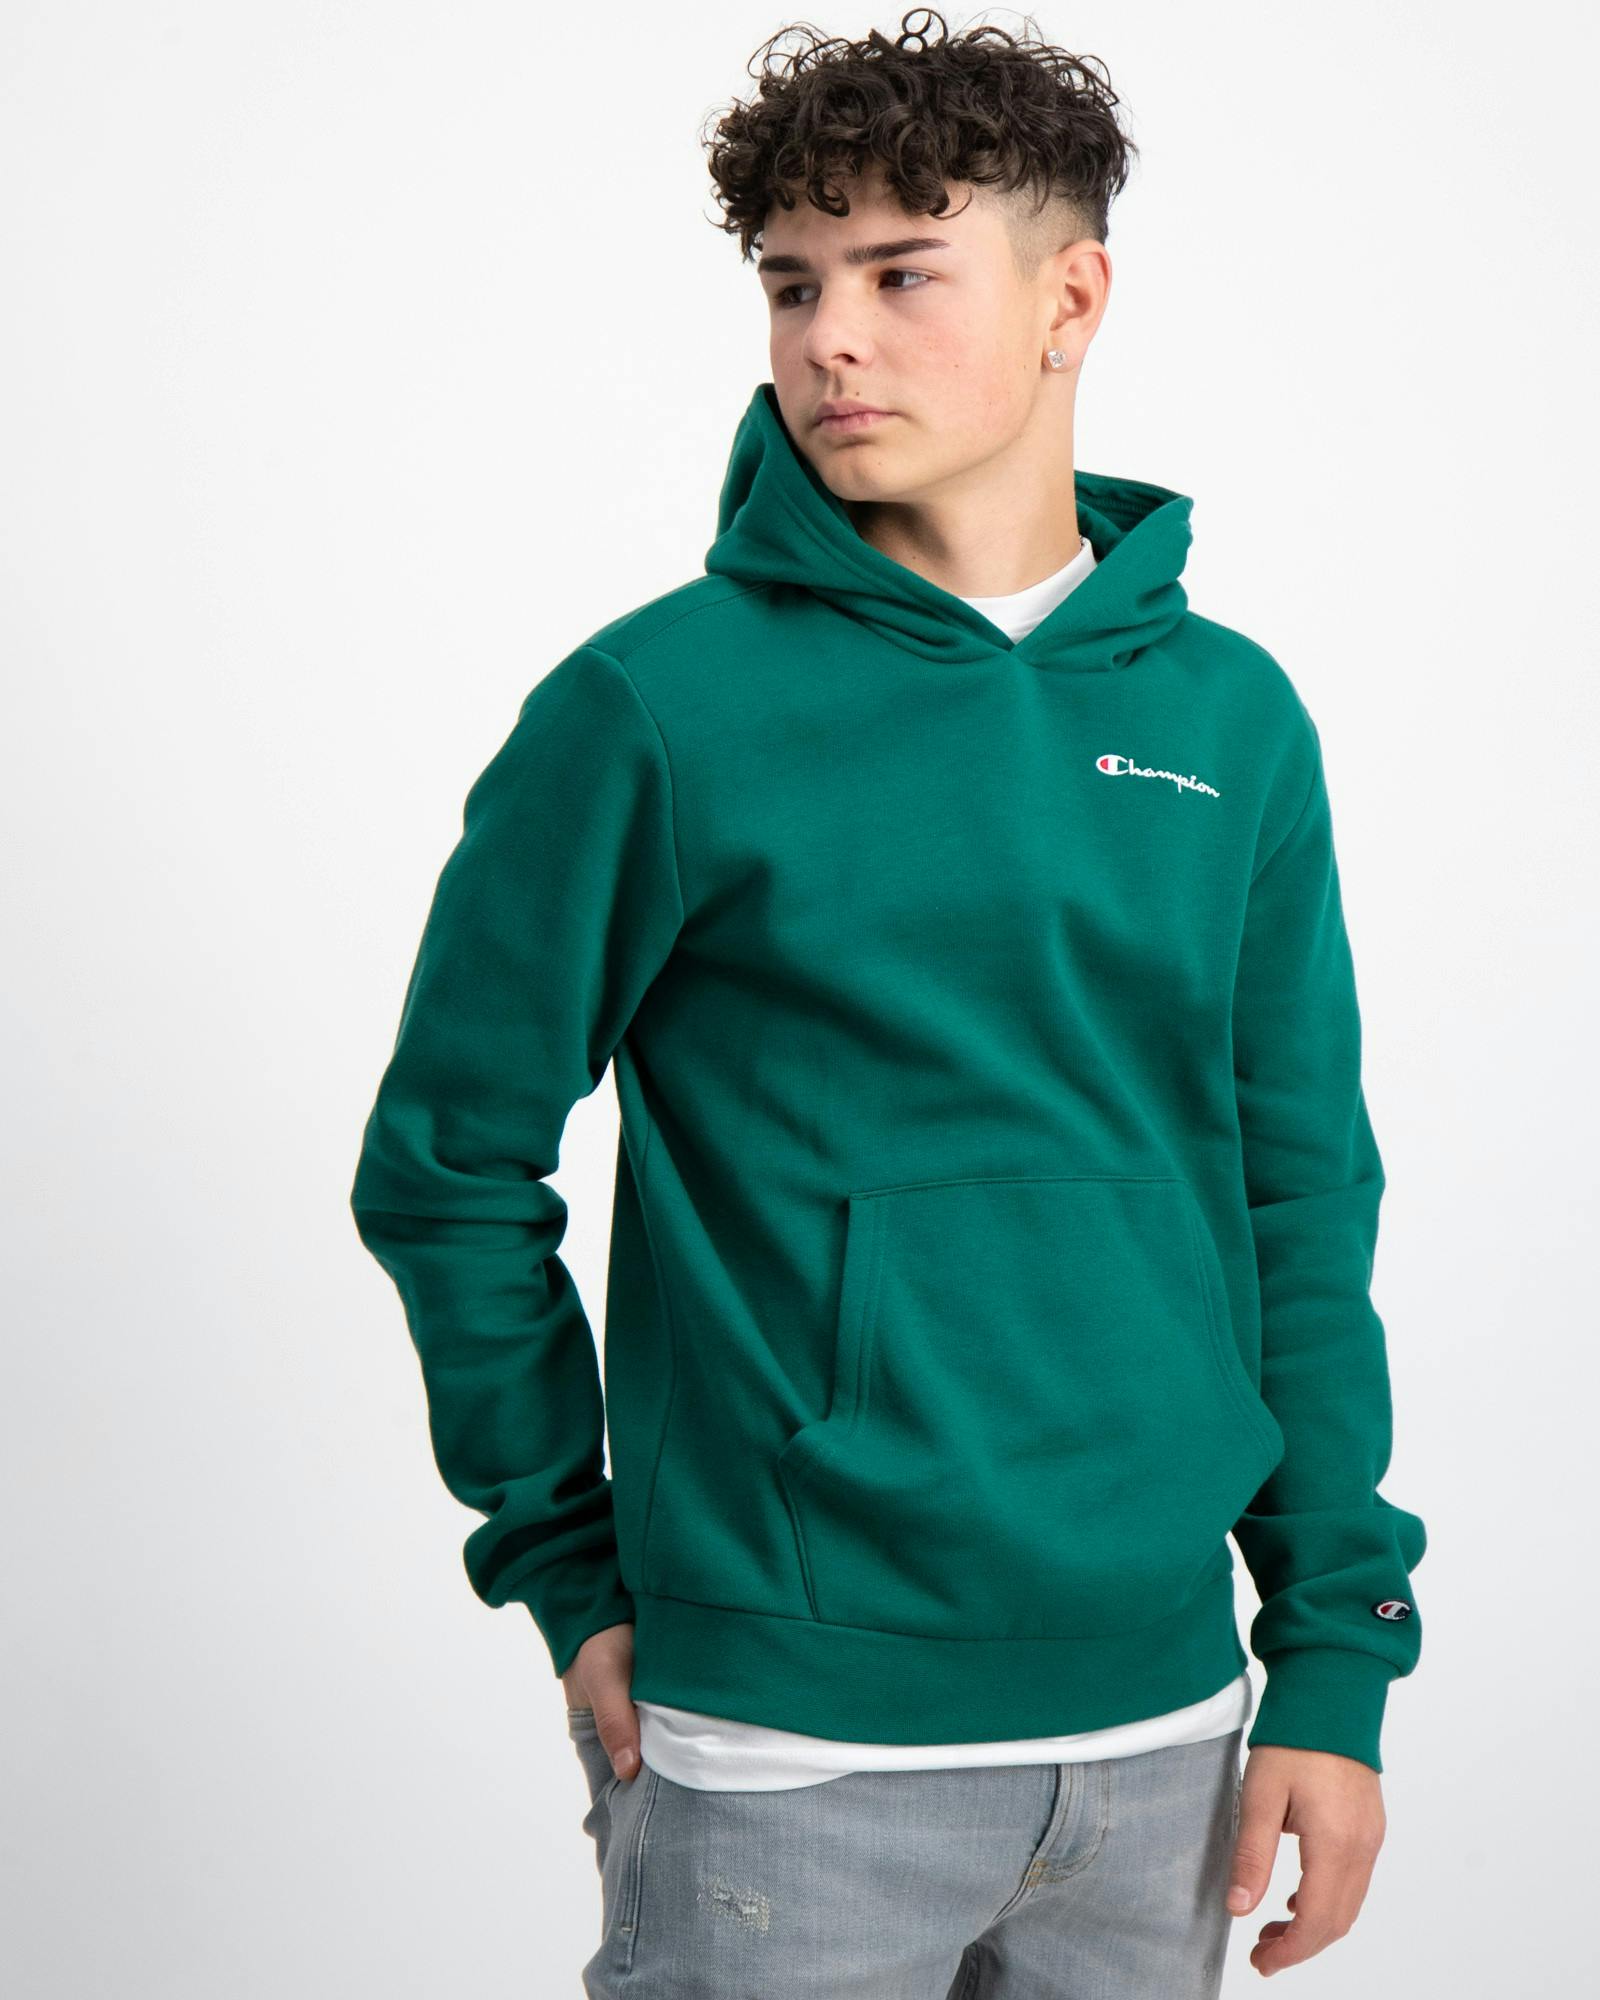 Grün Hooded Sweatshirt für Jungen | Kids Brand Store